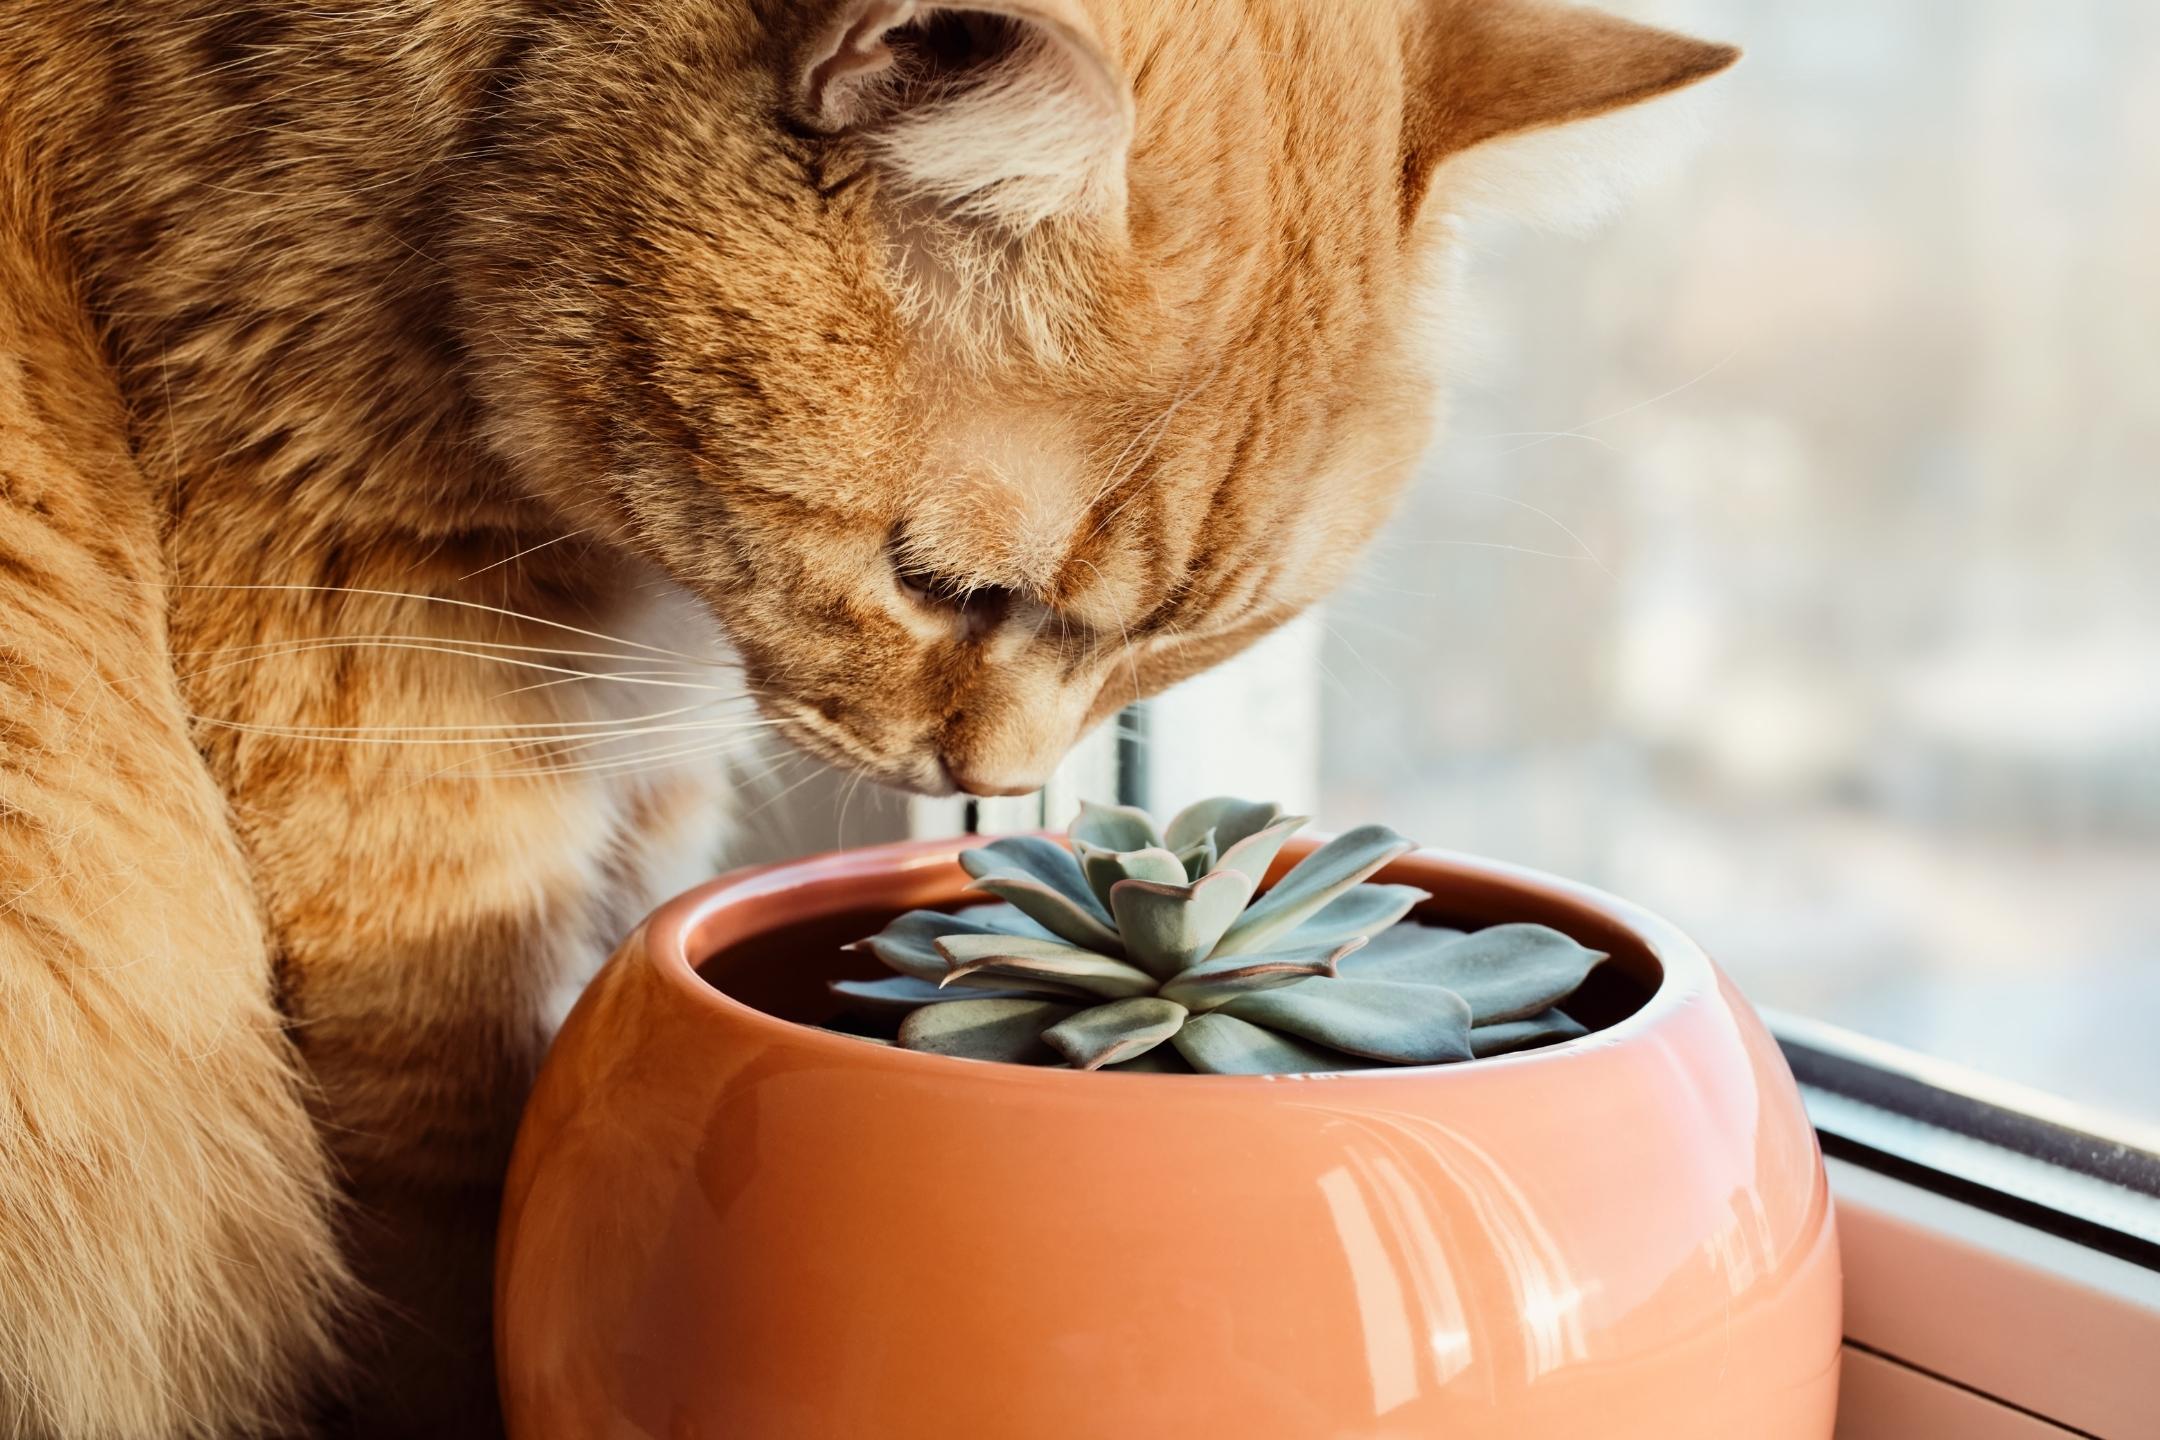 Top 10 katvriendelijke planten die niet giftig zijn voor katten